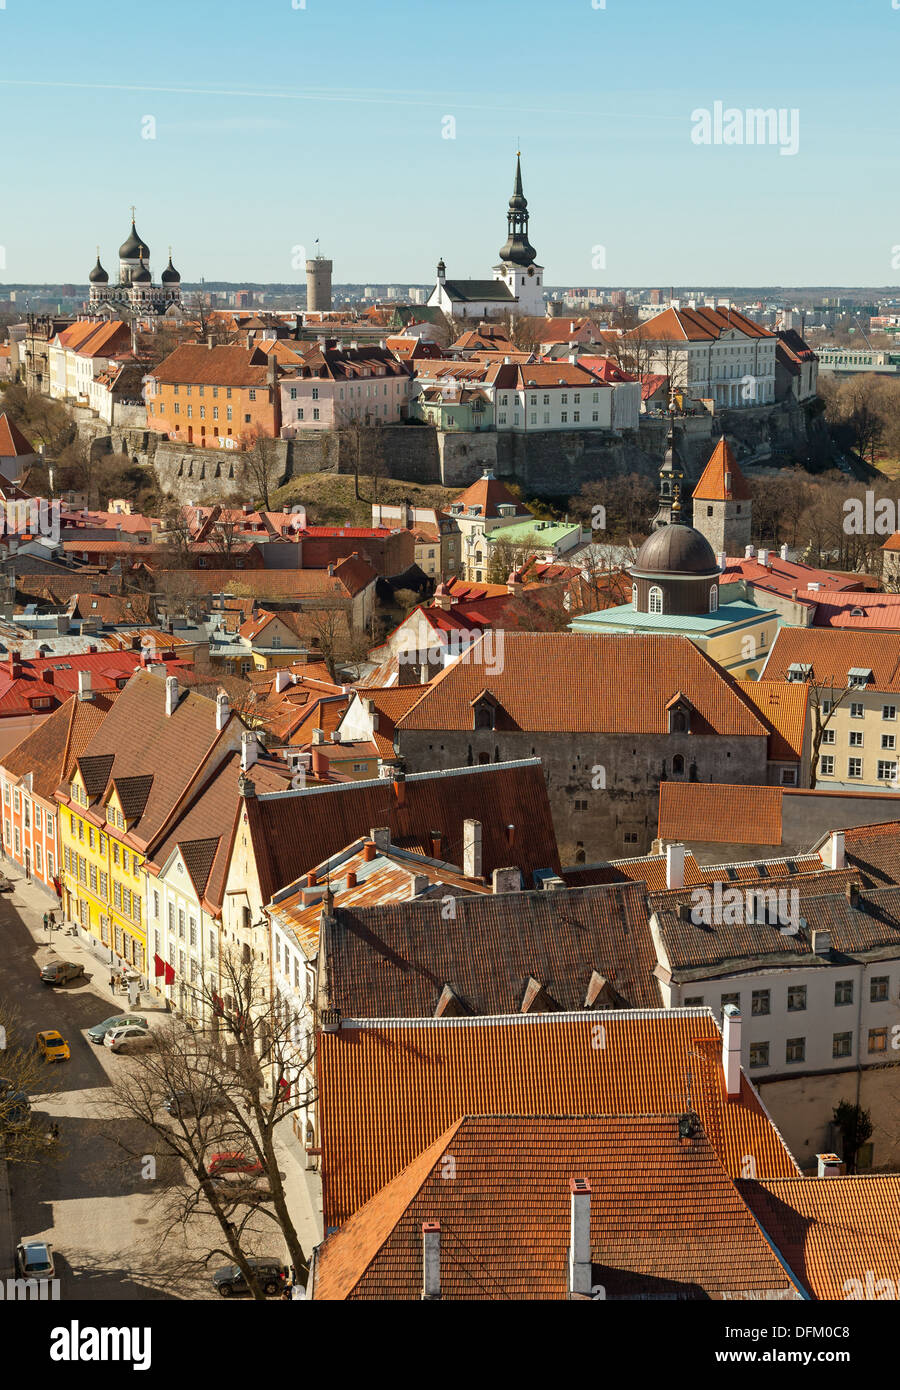 Aerial view on old town of Tallinn, Estonia Stock Photo